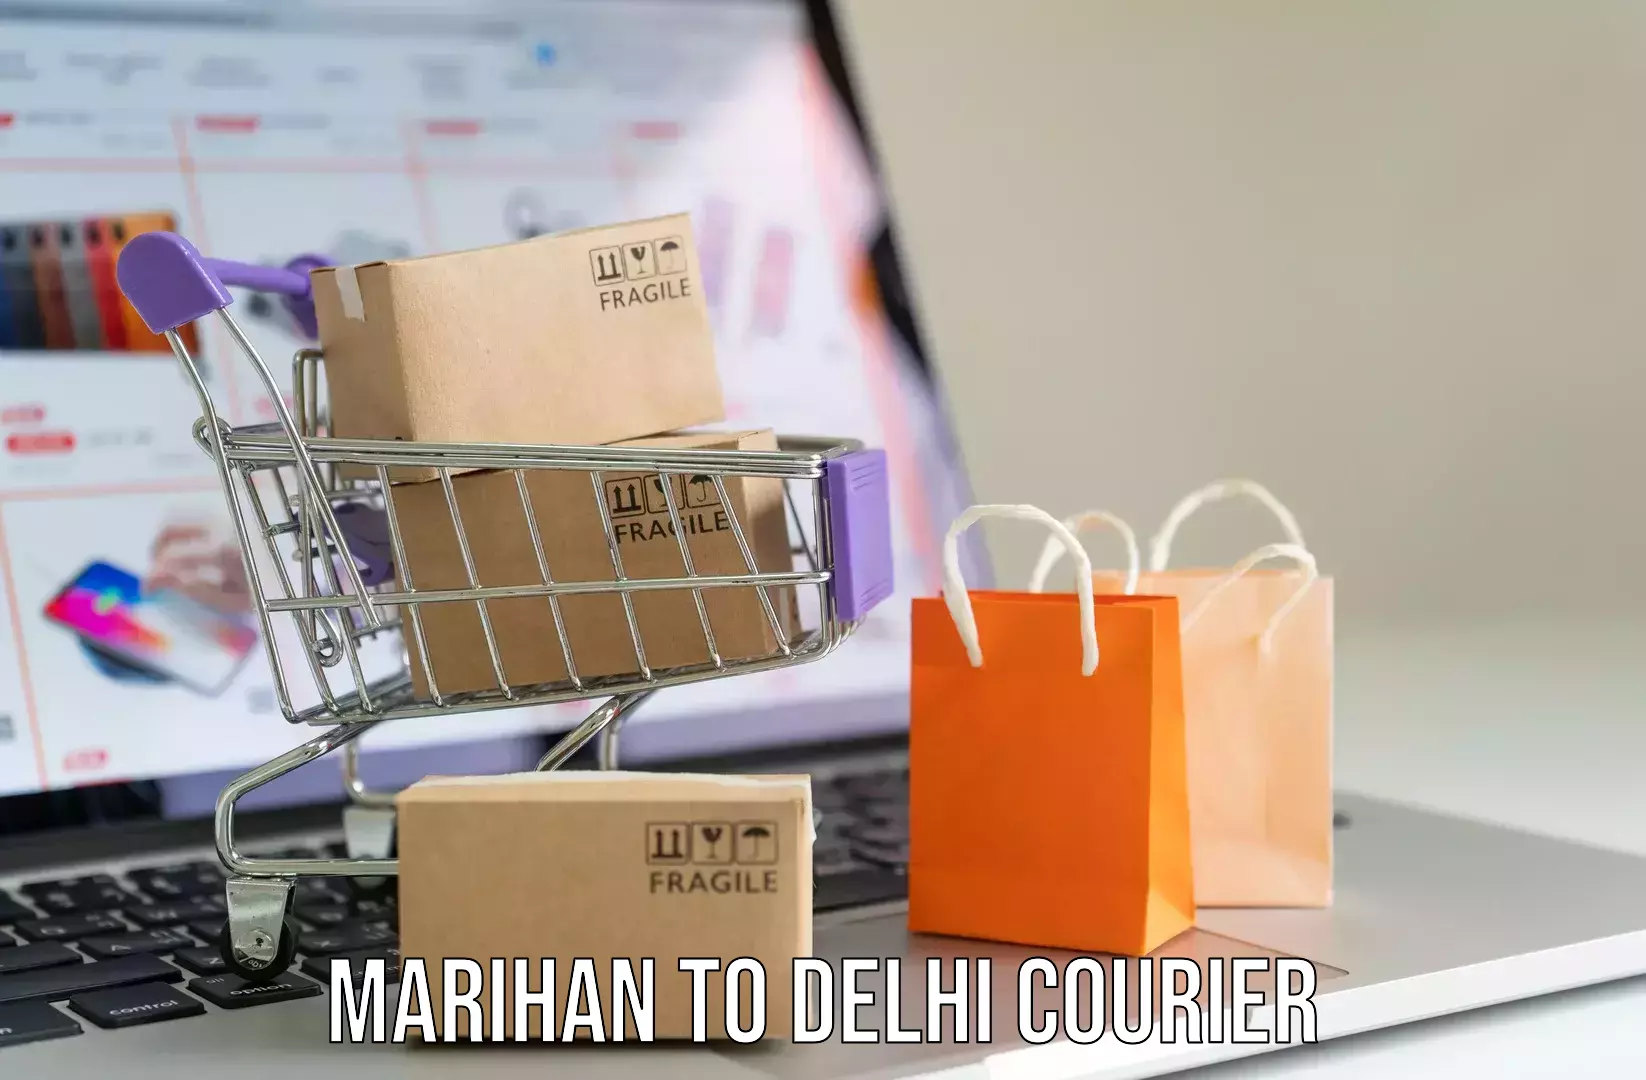 Emergency baggage service Marihan to Delhi